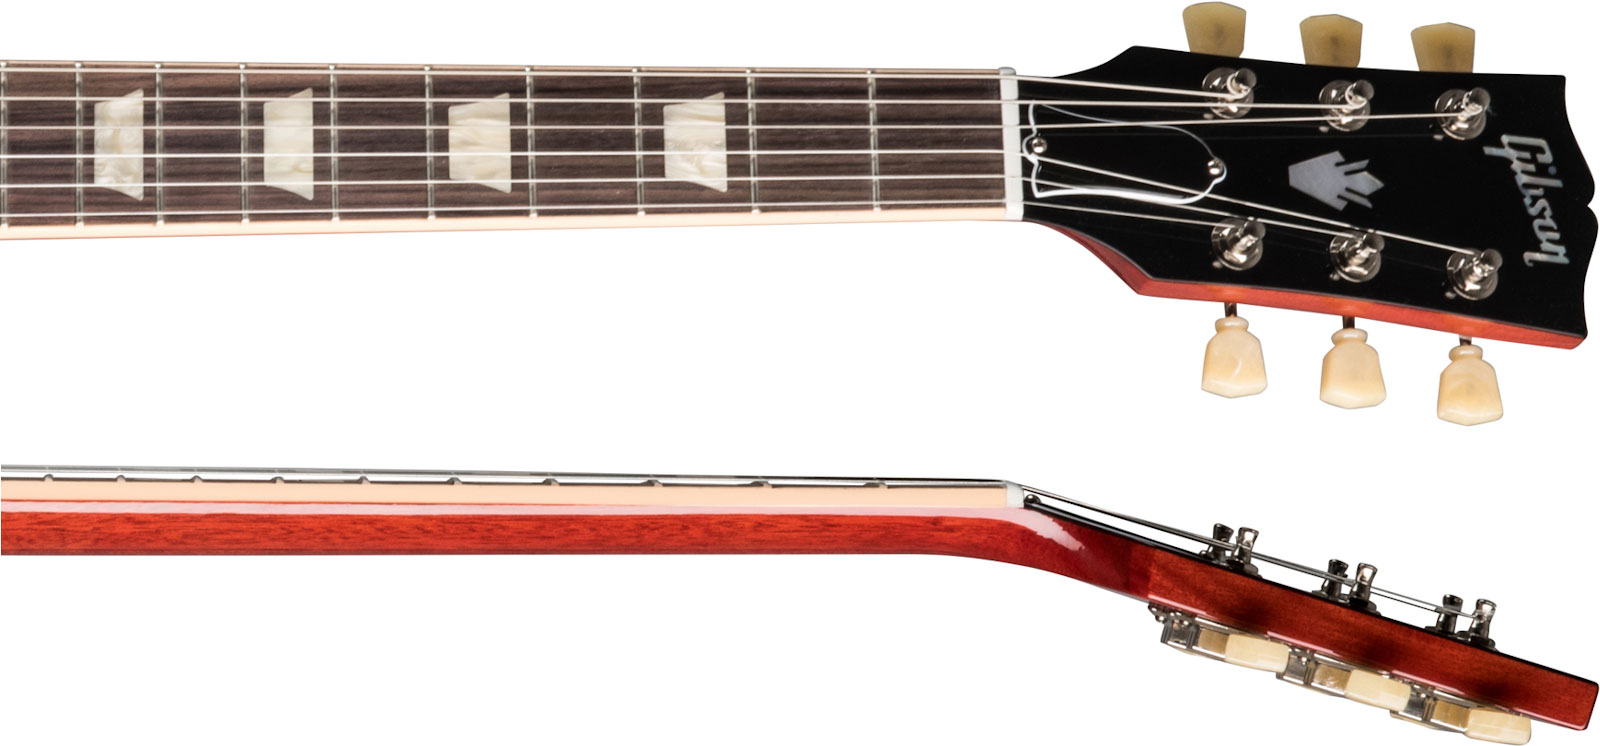 Gibson Sg Standard '61 Maestro Vibrola Original 2h Trem Rw - Retro-Rock-E-Gitarre - Variation 2